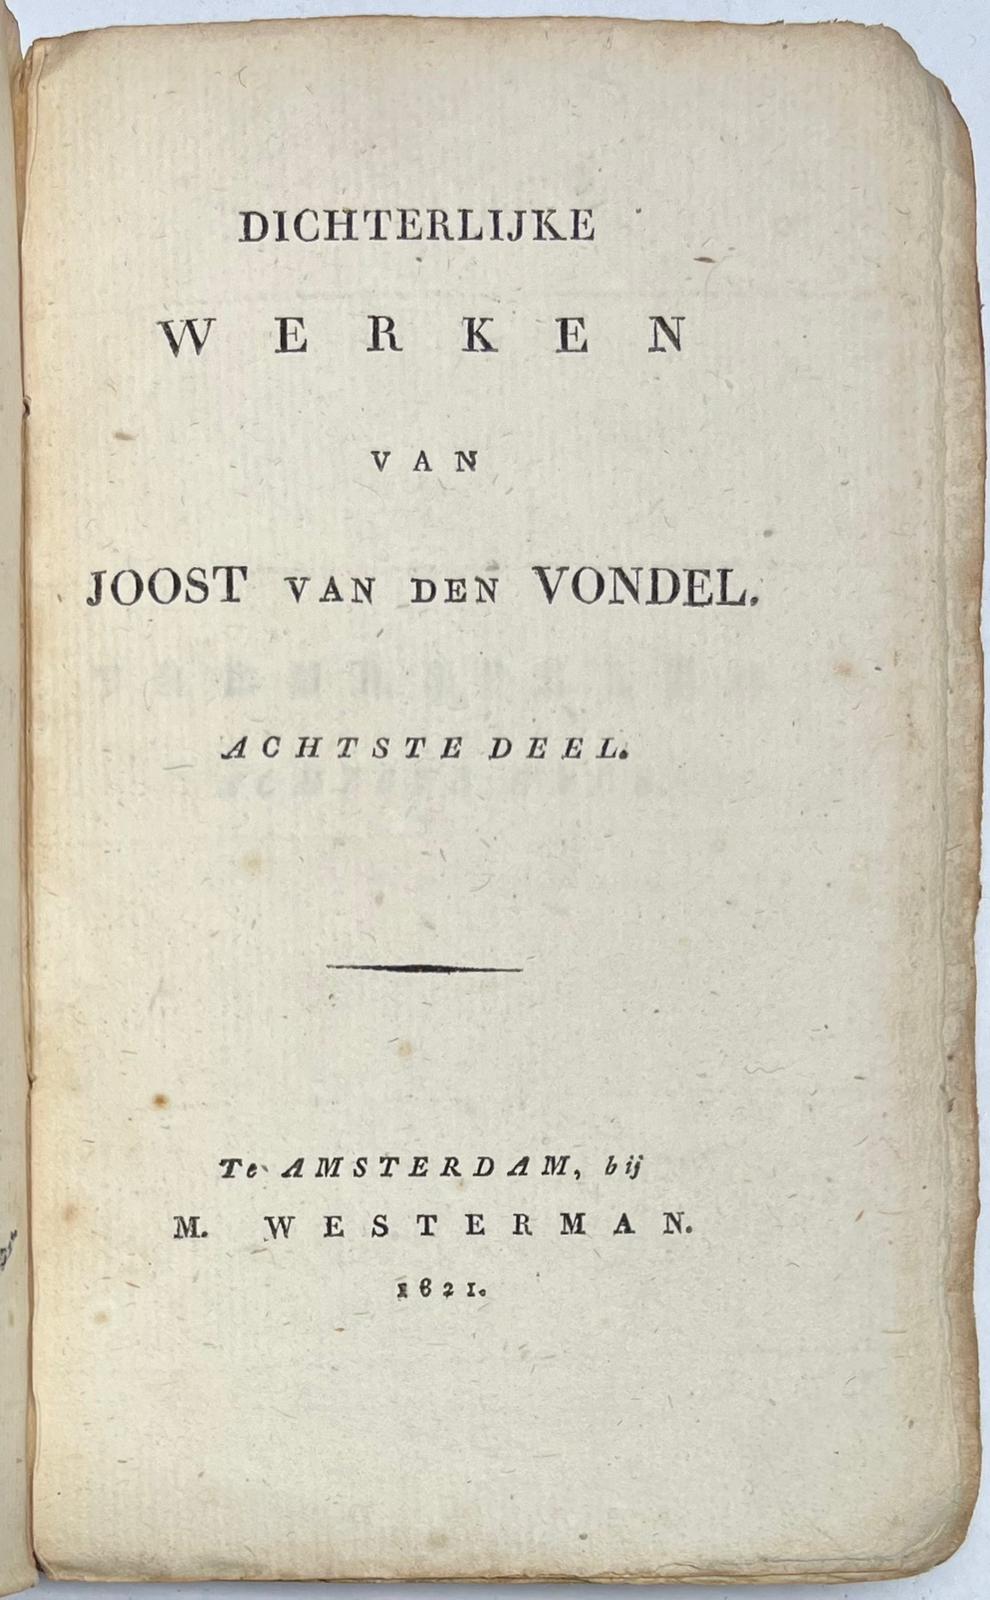 Two volumes, 1820-21, Vondel | Dichterlijke Werken van Joost van den Vondel. Parts 4 and 8. Amsterdam, M. Westerman, 1620-1621, two vols.